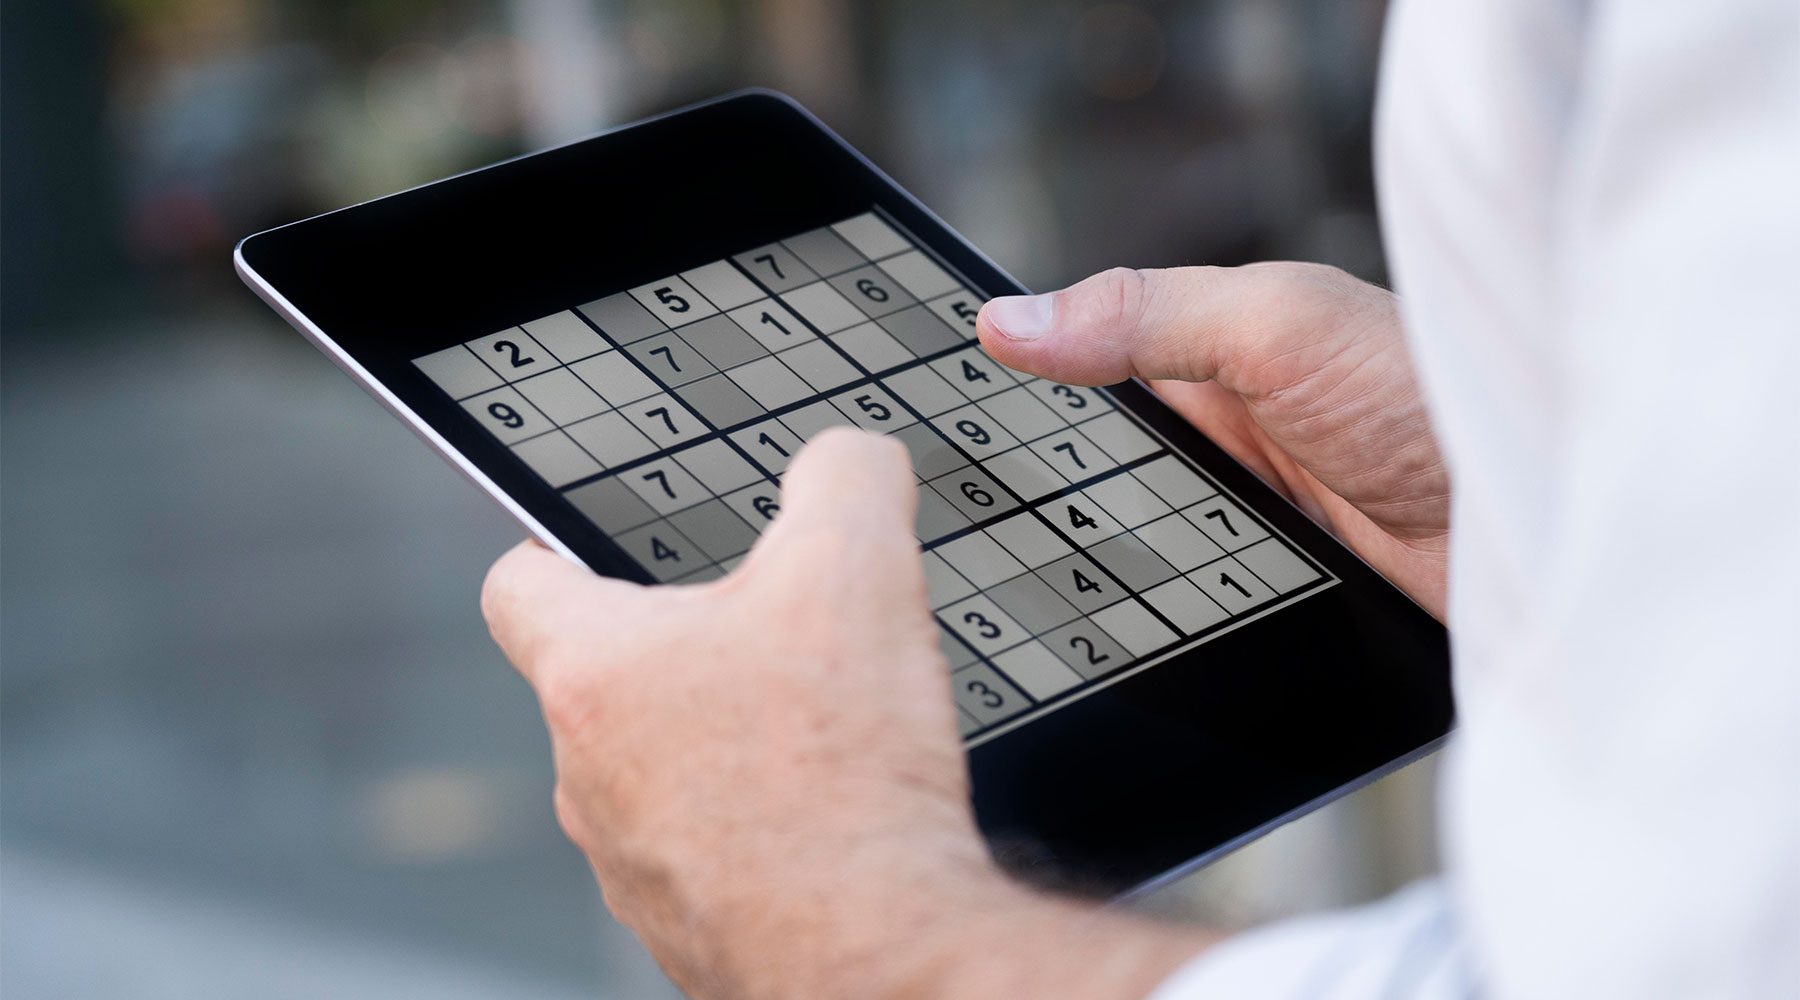 Anciano jugando a sudoku online, uno de los más demandados juegos para mejorar la memoria gratis.